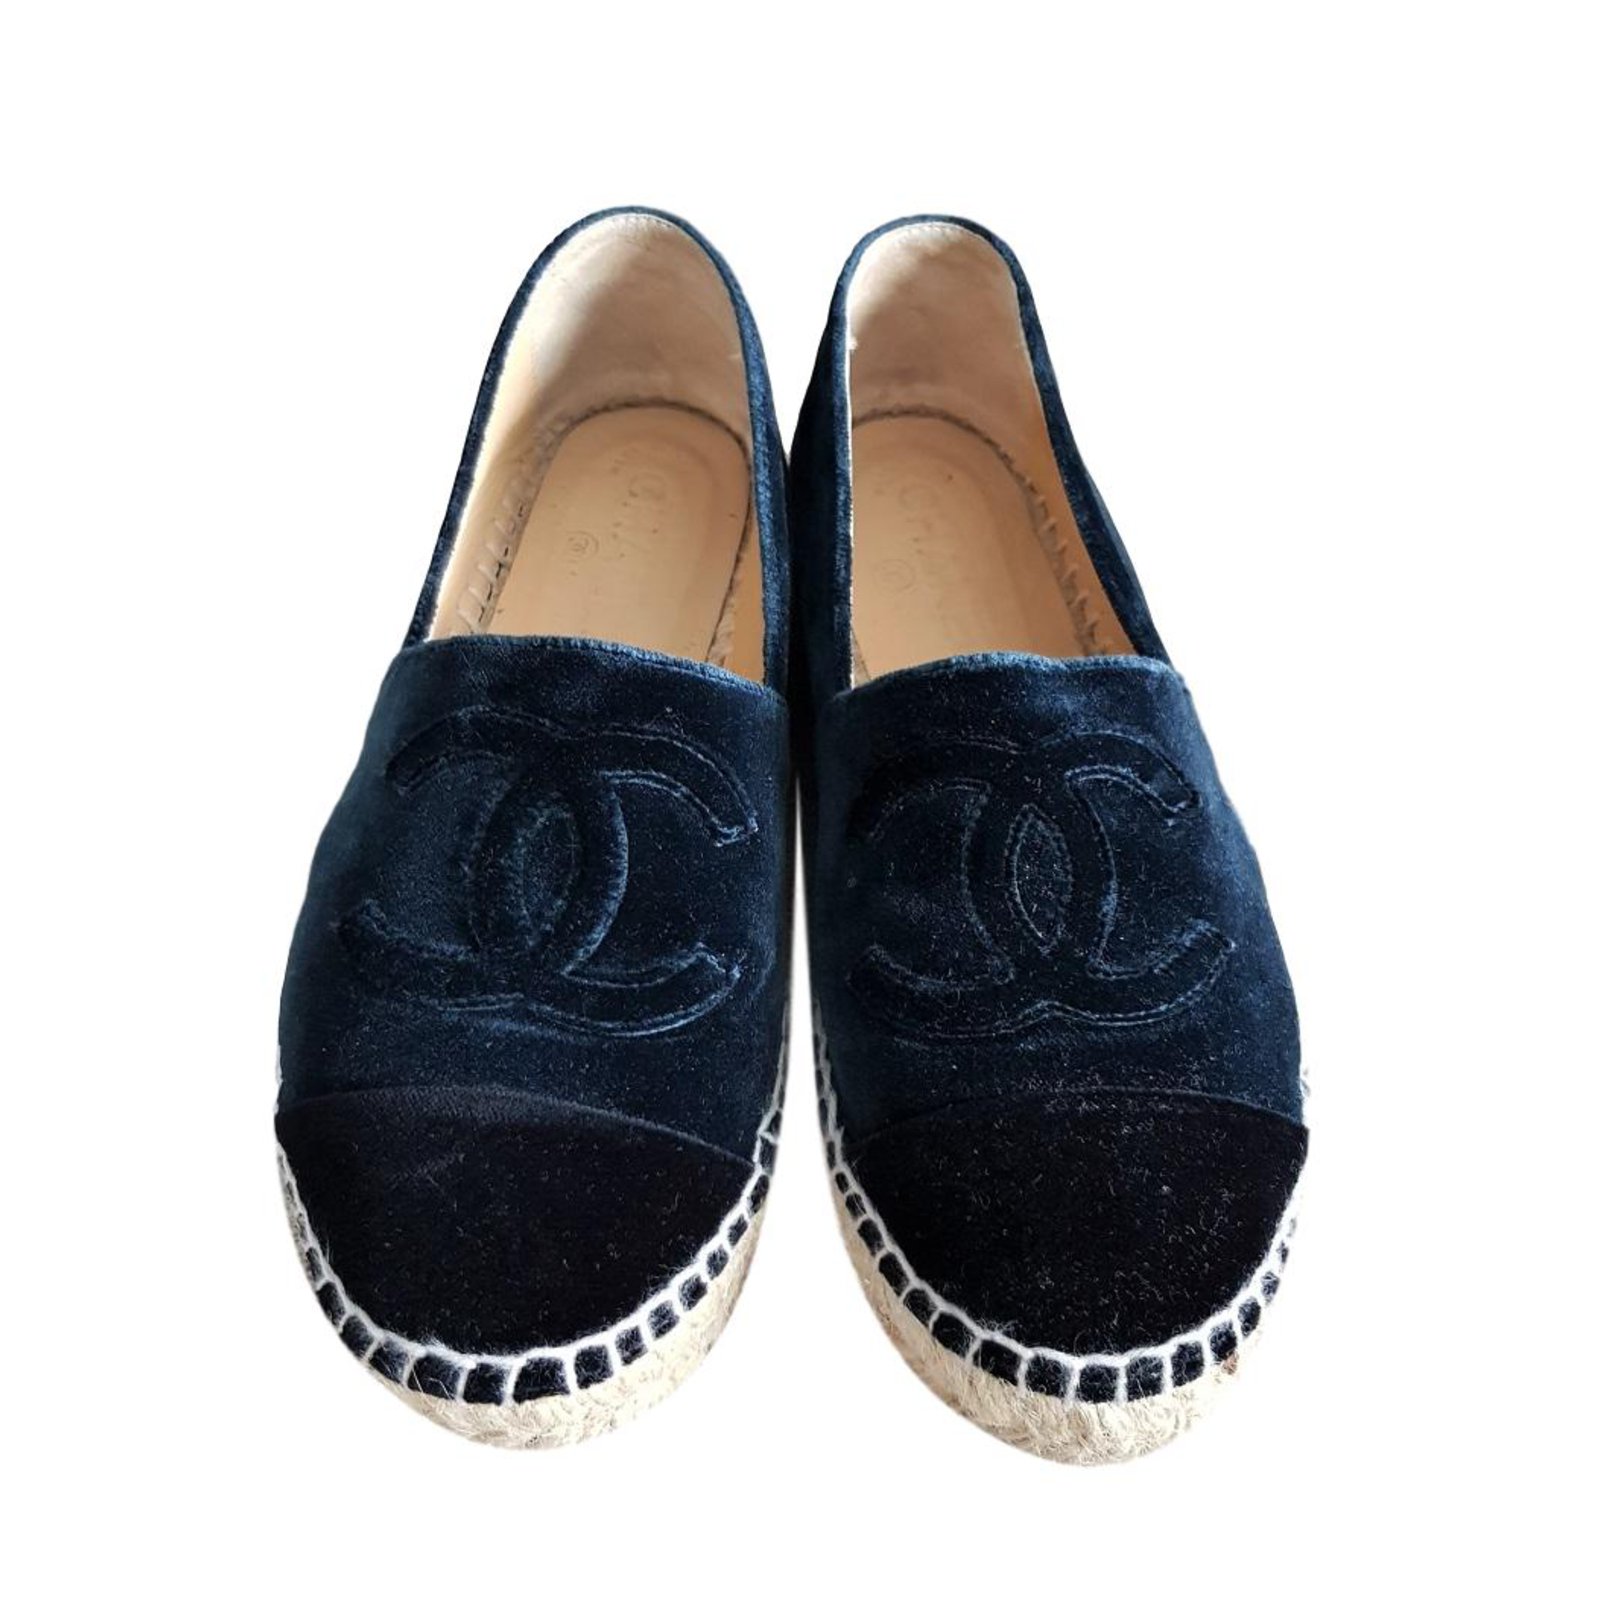 CHANEL Zapatos de alpargata azul marino de terciopelo EU37